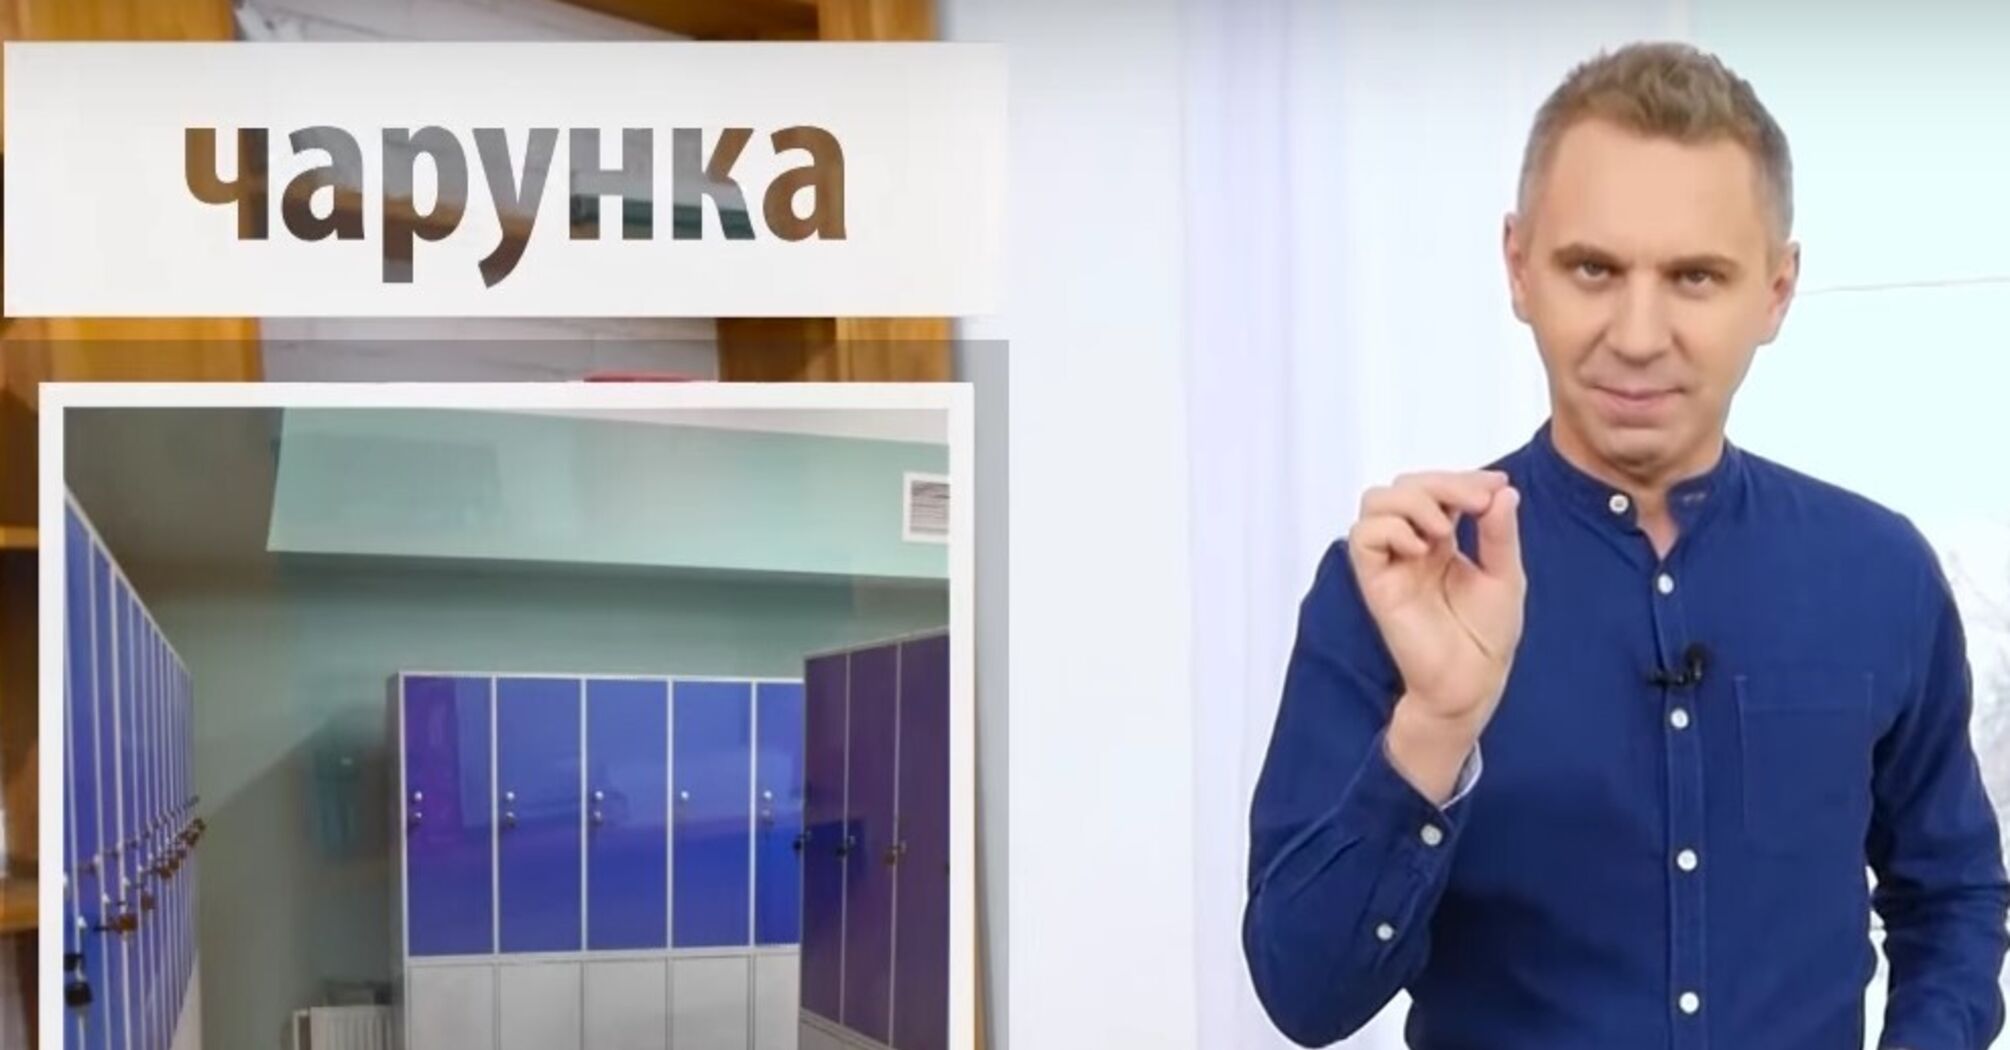 Незаслуженно забытое украинское слово 'чарунка': языковед напомнил его значение